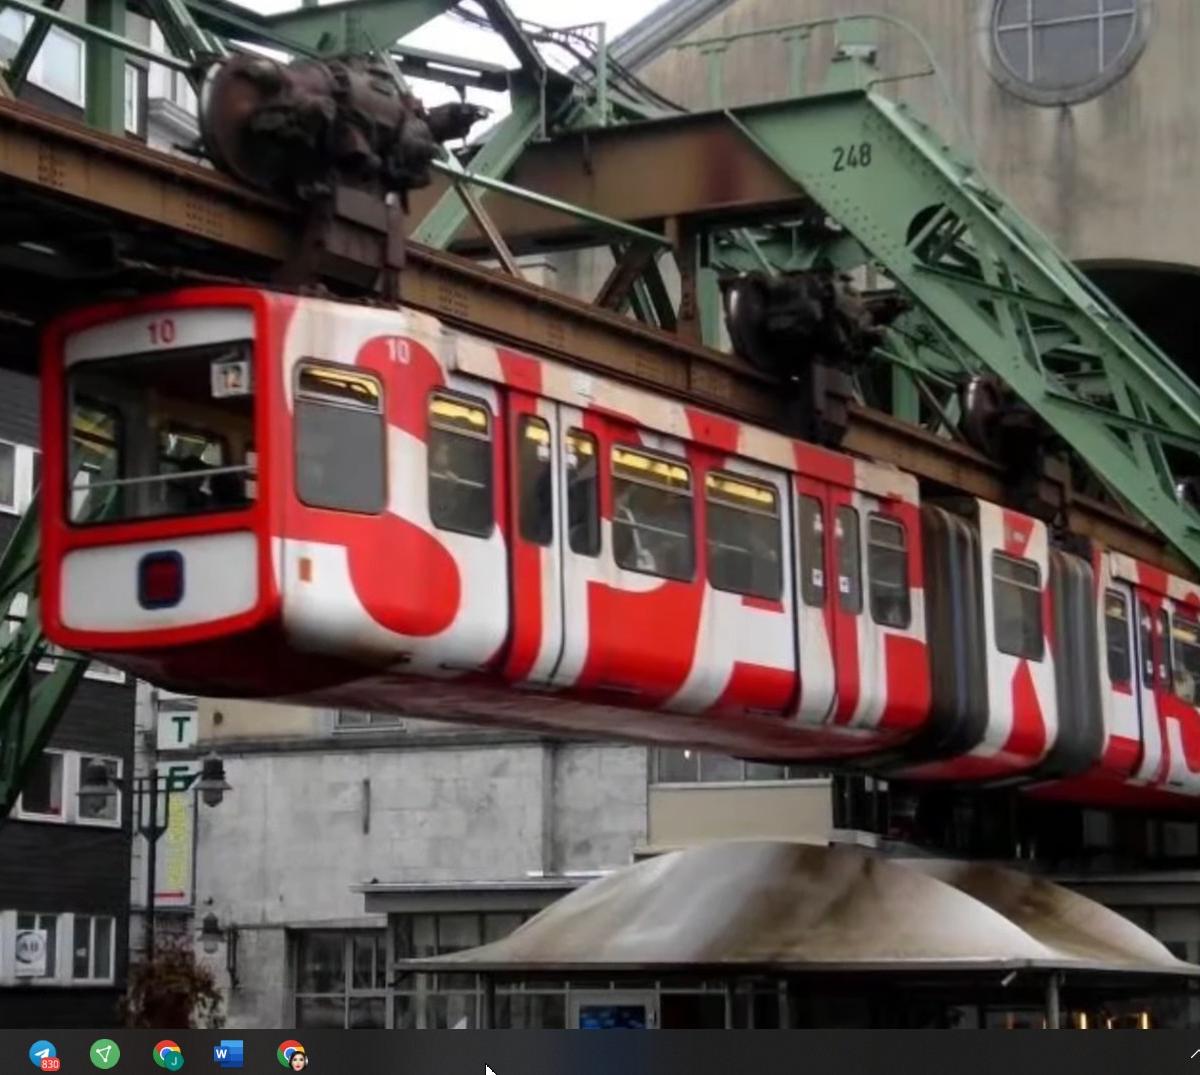 Wuppertal süspansiyon treni - Almanya'daki en sıra dışı ulaşım